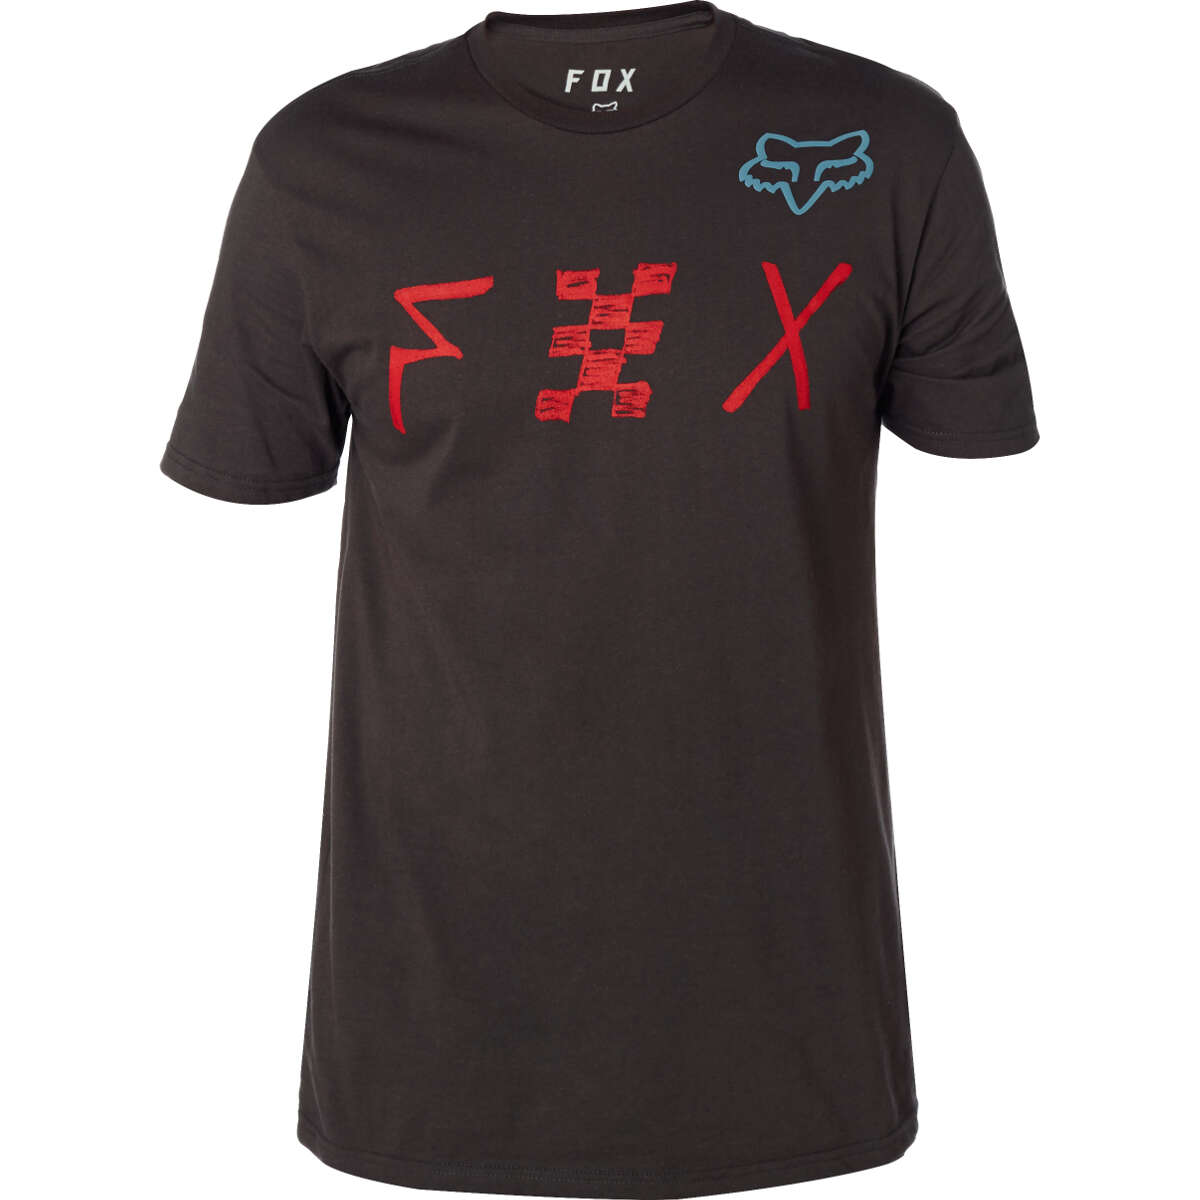 Fox T-Shirt Mind Blown Premium Black Vintage